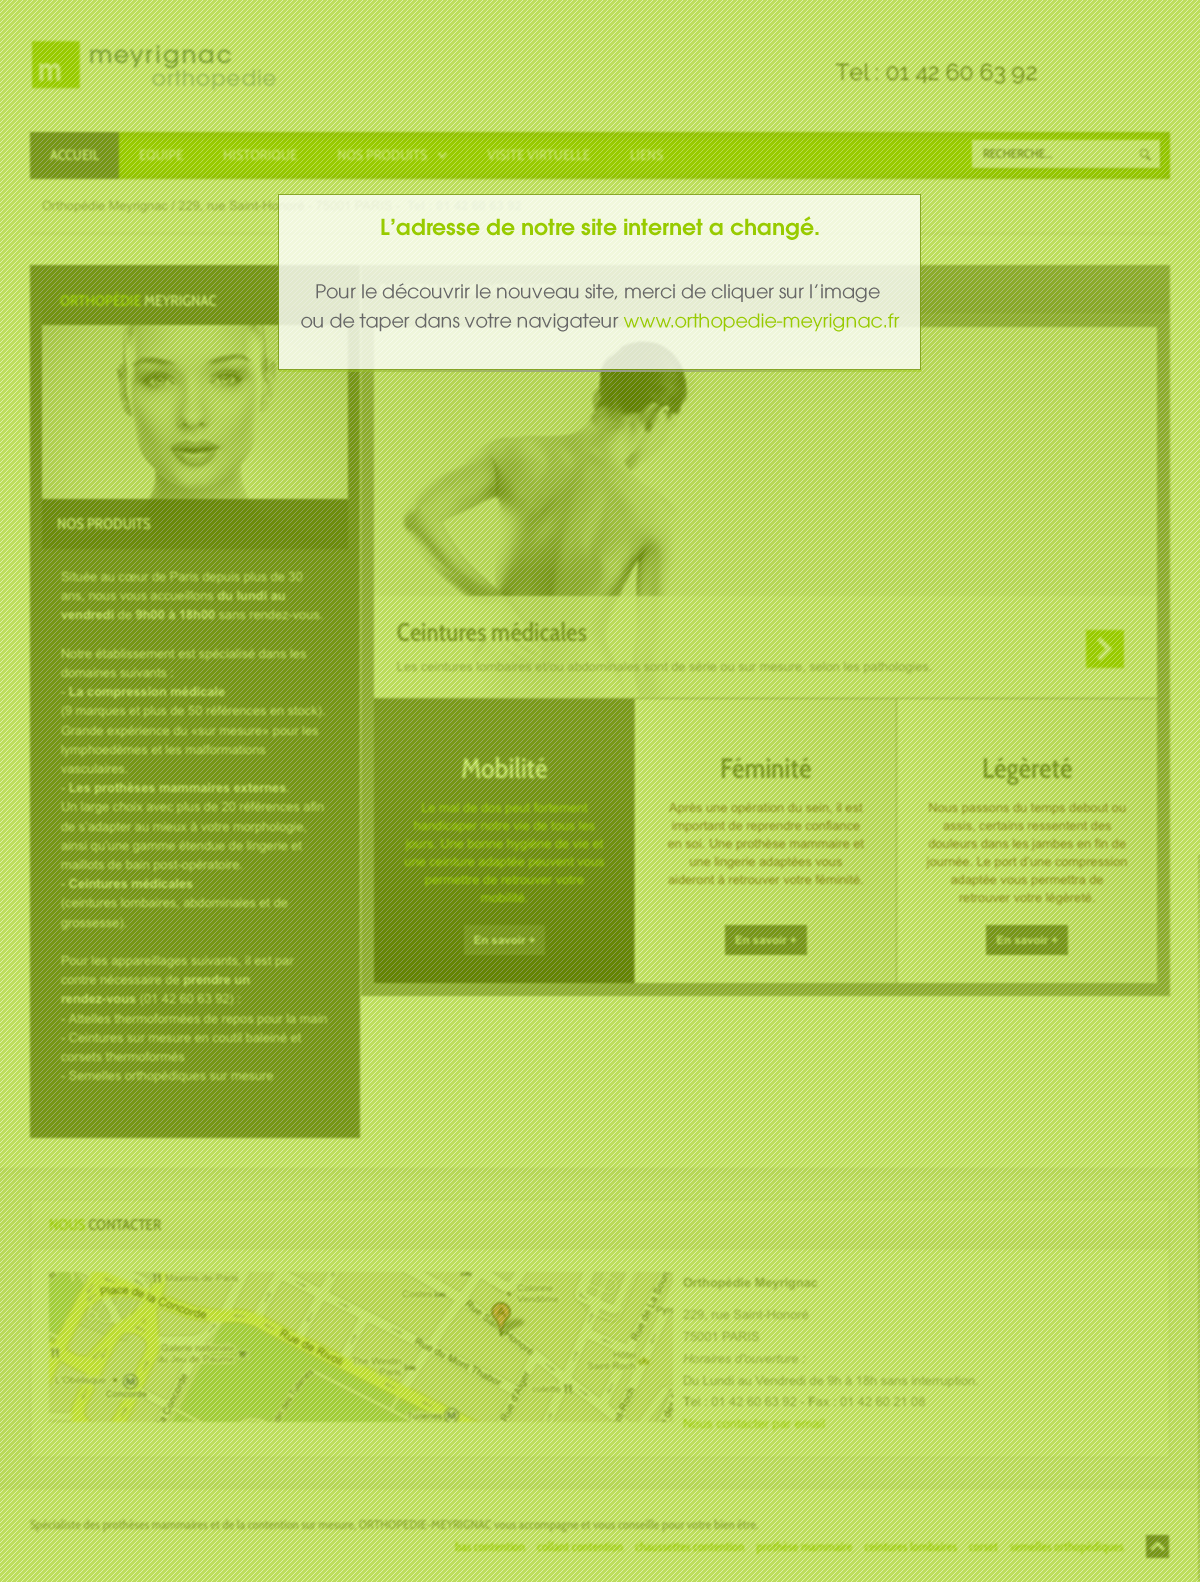 Nouveau site internet www.orthopedie-meyrignac.fr